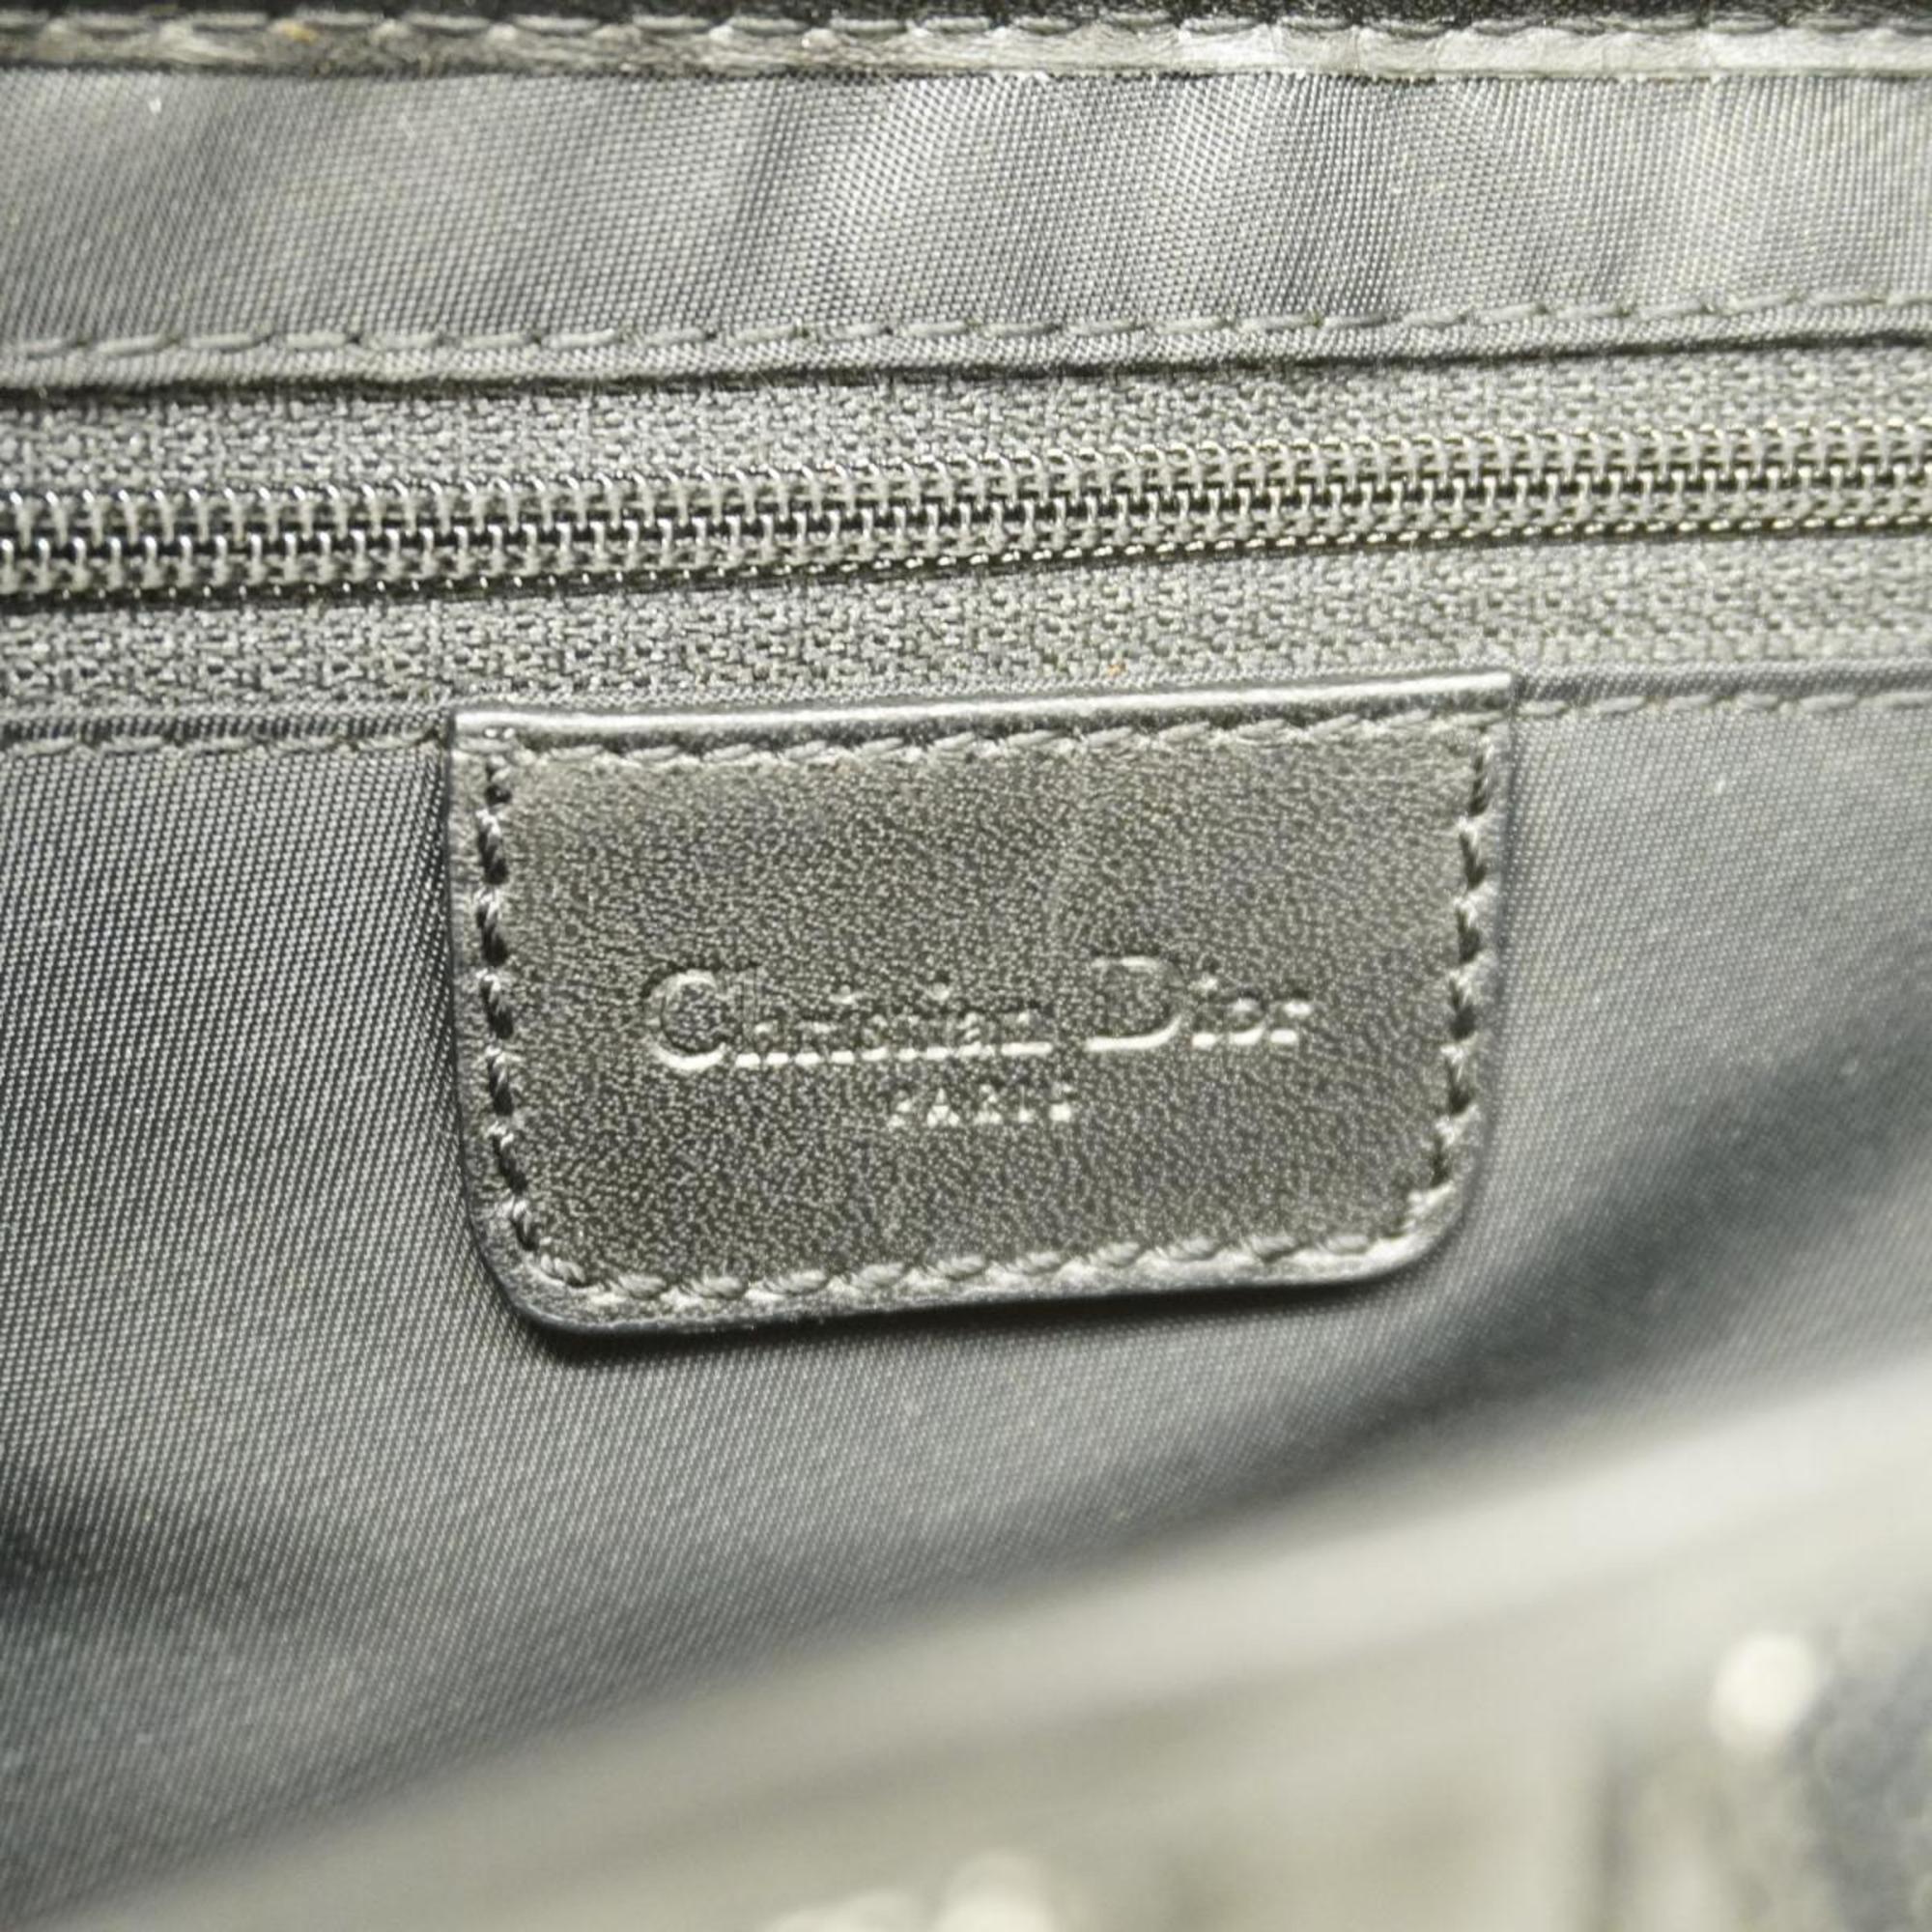 クリスチャン・ディオール(Christian Dior) クリスチャンディオール ハンドバッグ トロッター サドルバッグ キャンバス ブラック   レディース